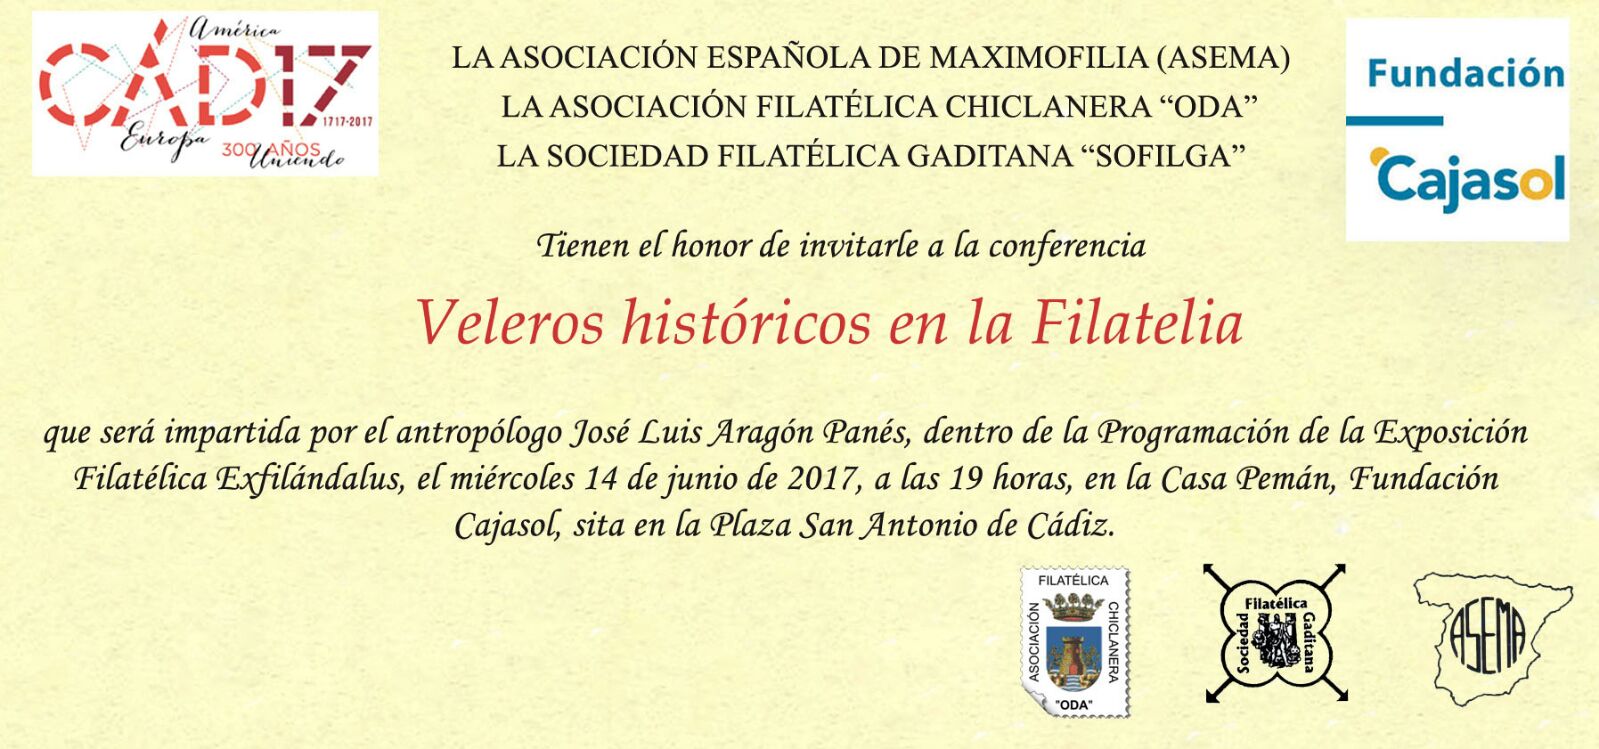 Invitación para la conferencia de José Luis Aragón sobre Filatelia en la Fundación Cajasol (Cádiz)